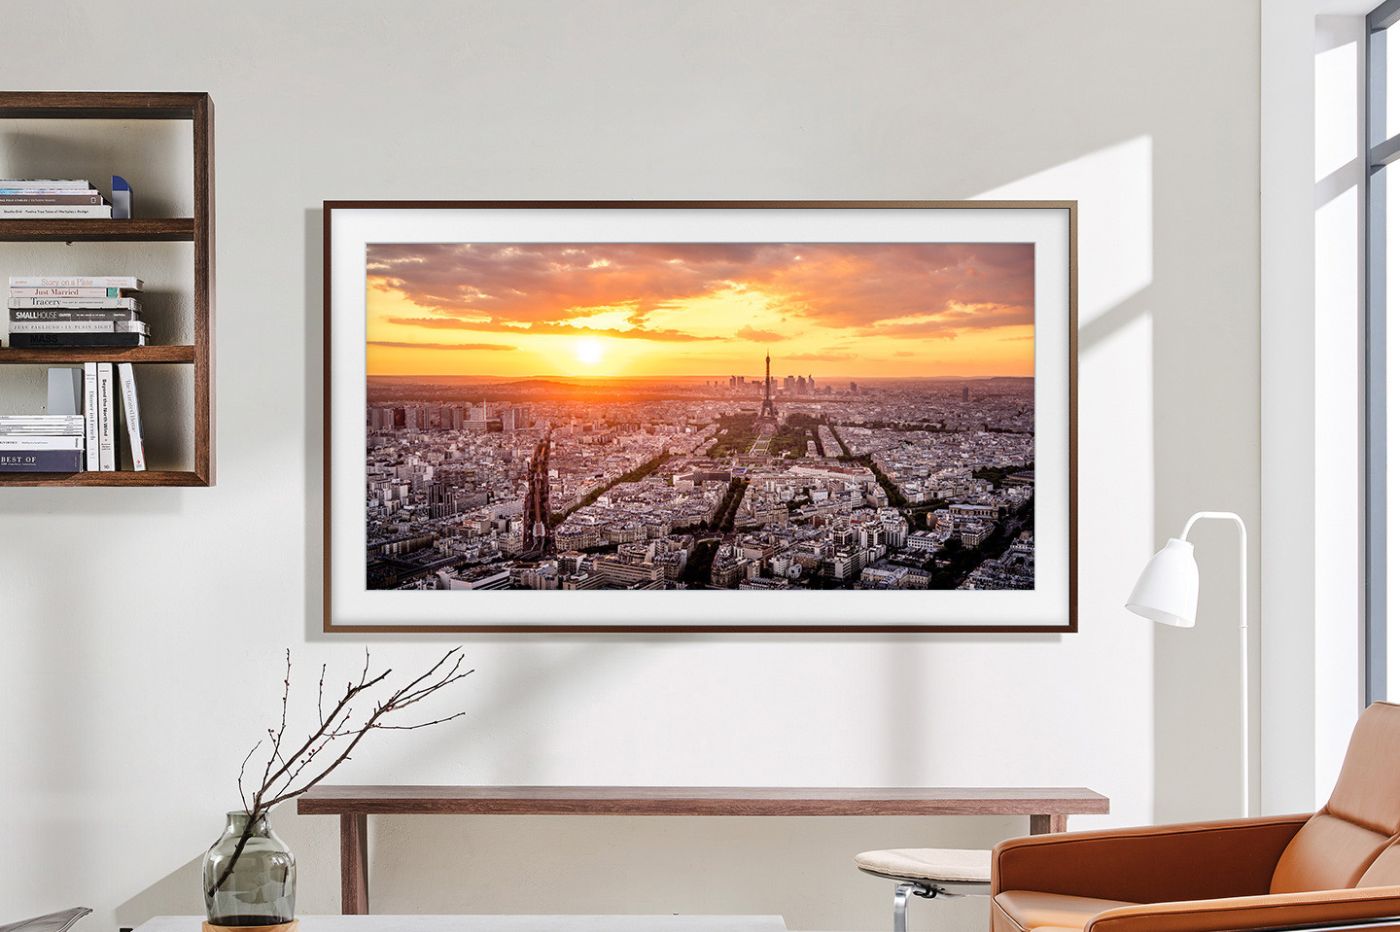 Pour Noël, offrez-vous la Smart TV "The Frame" de Samsung pour moins de 1000 €